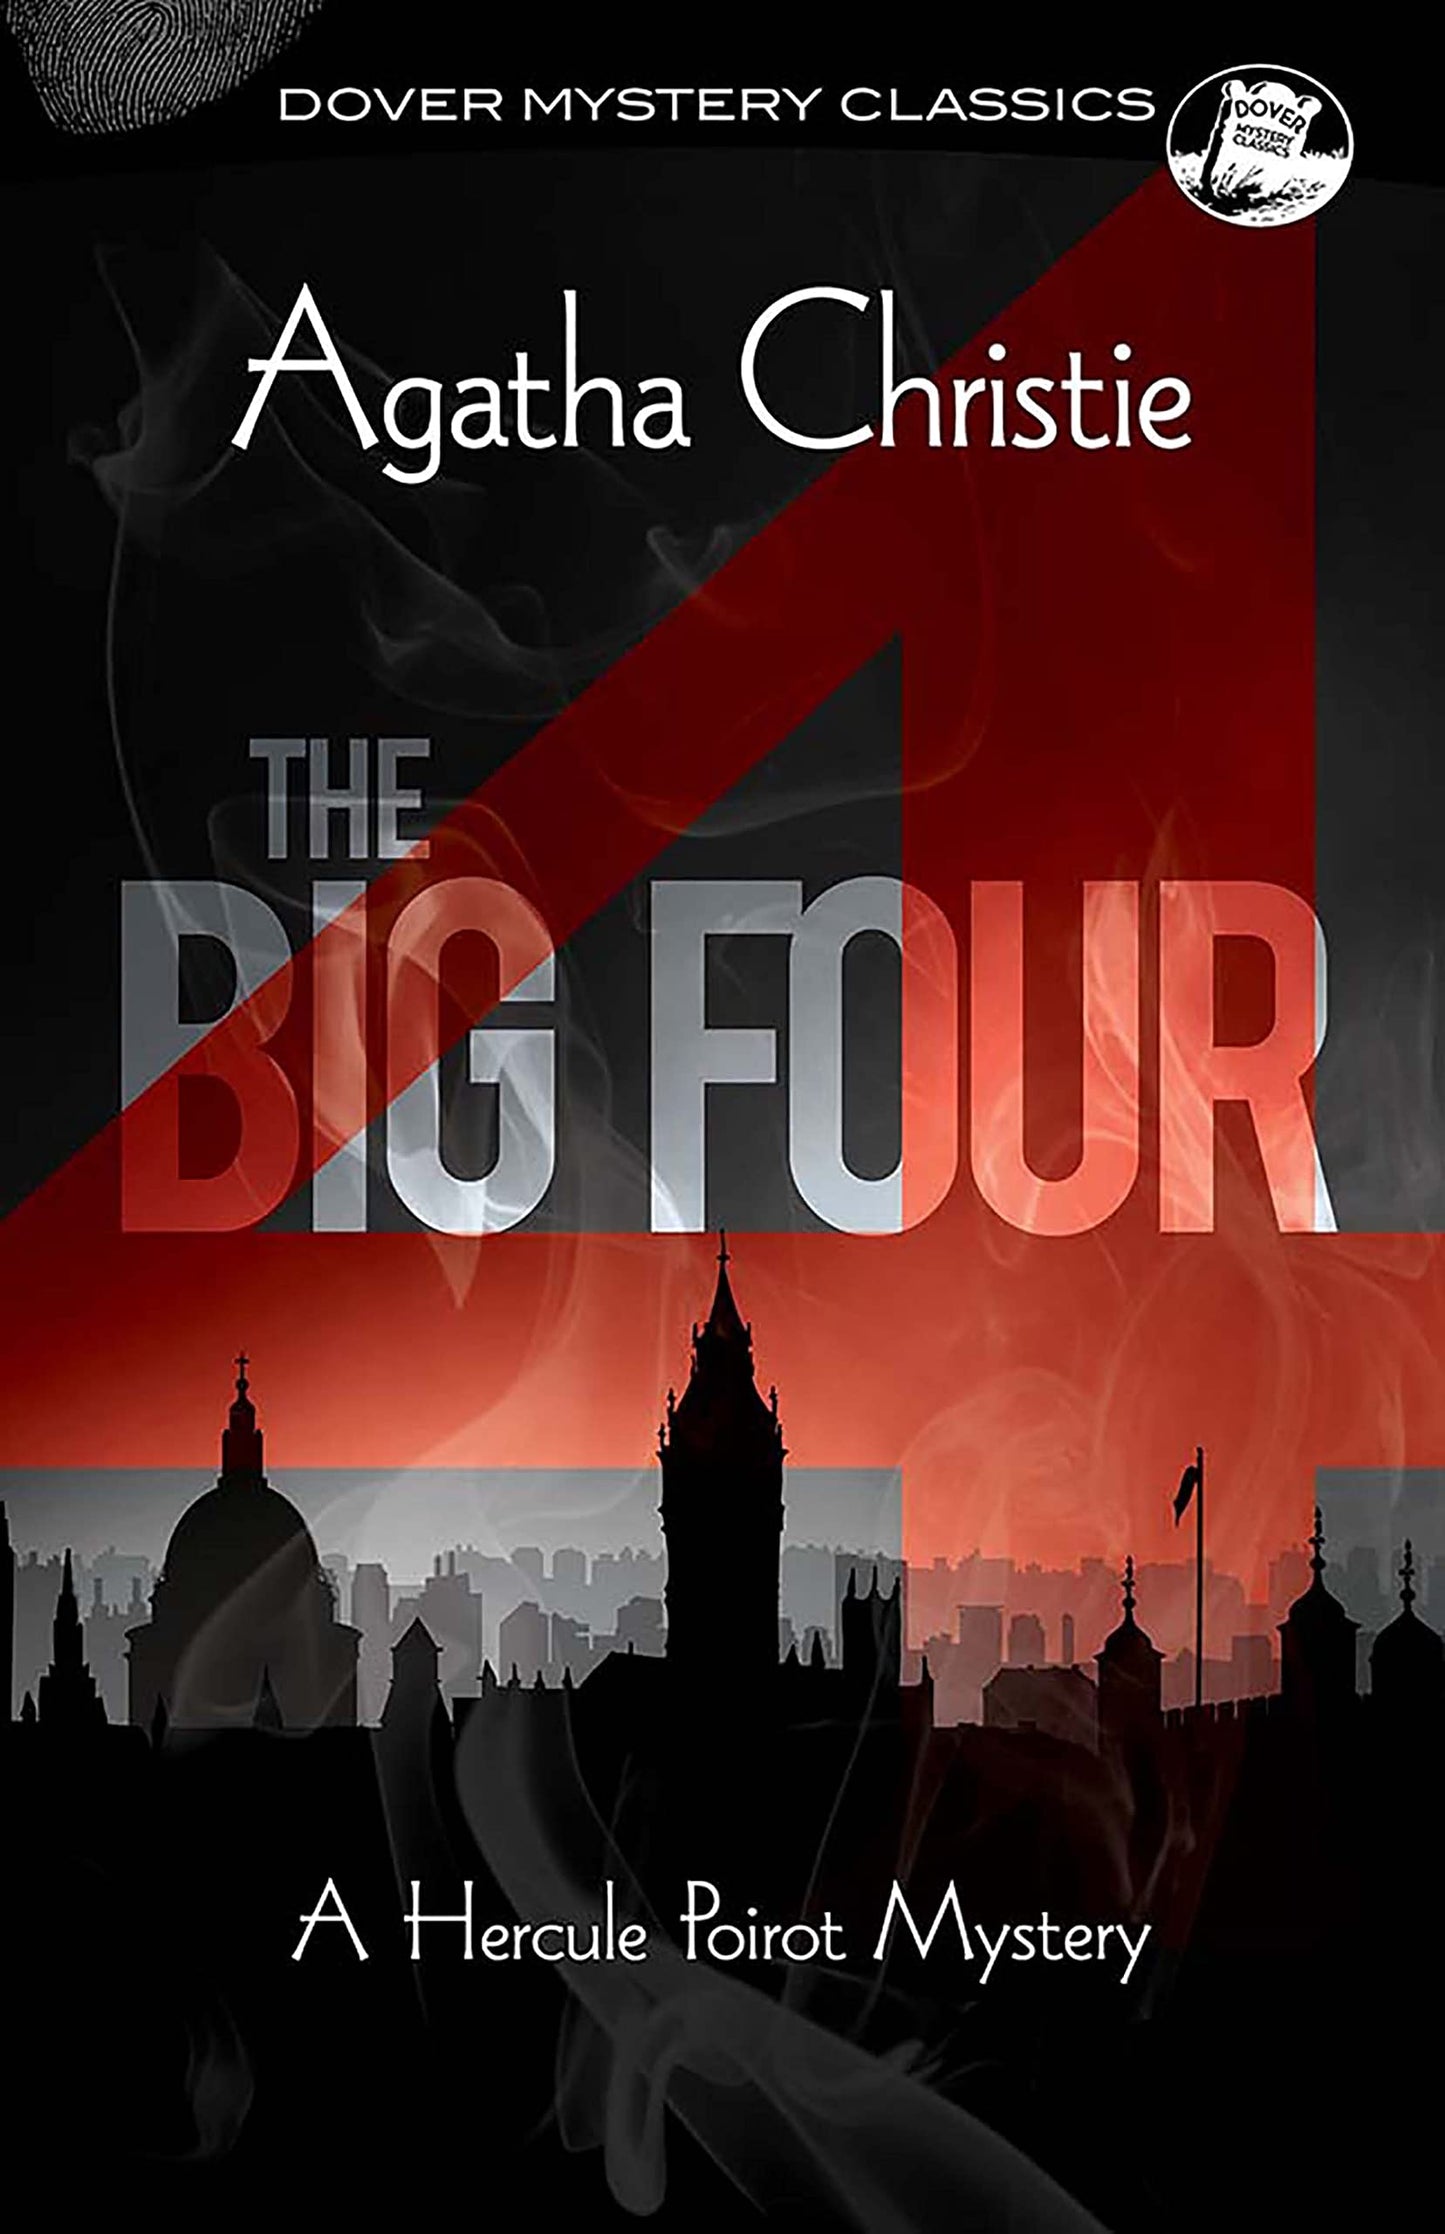 Big Four (Christie - Dover ed.)